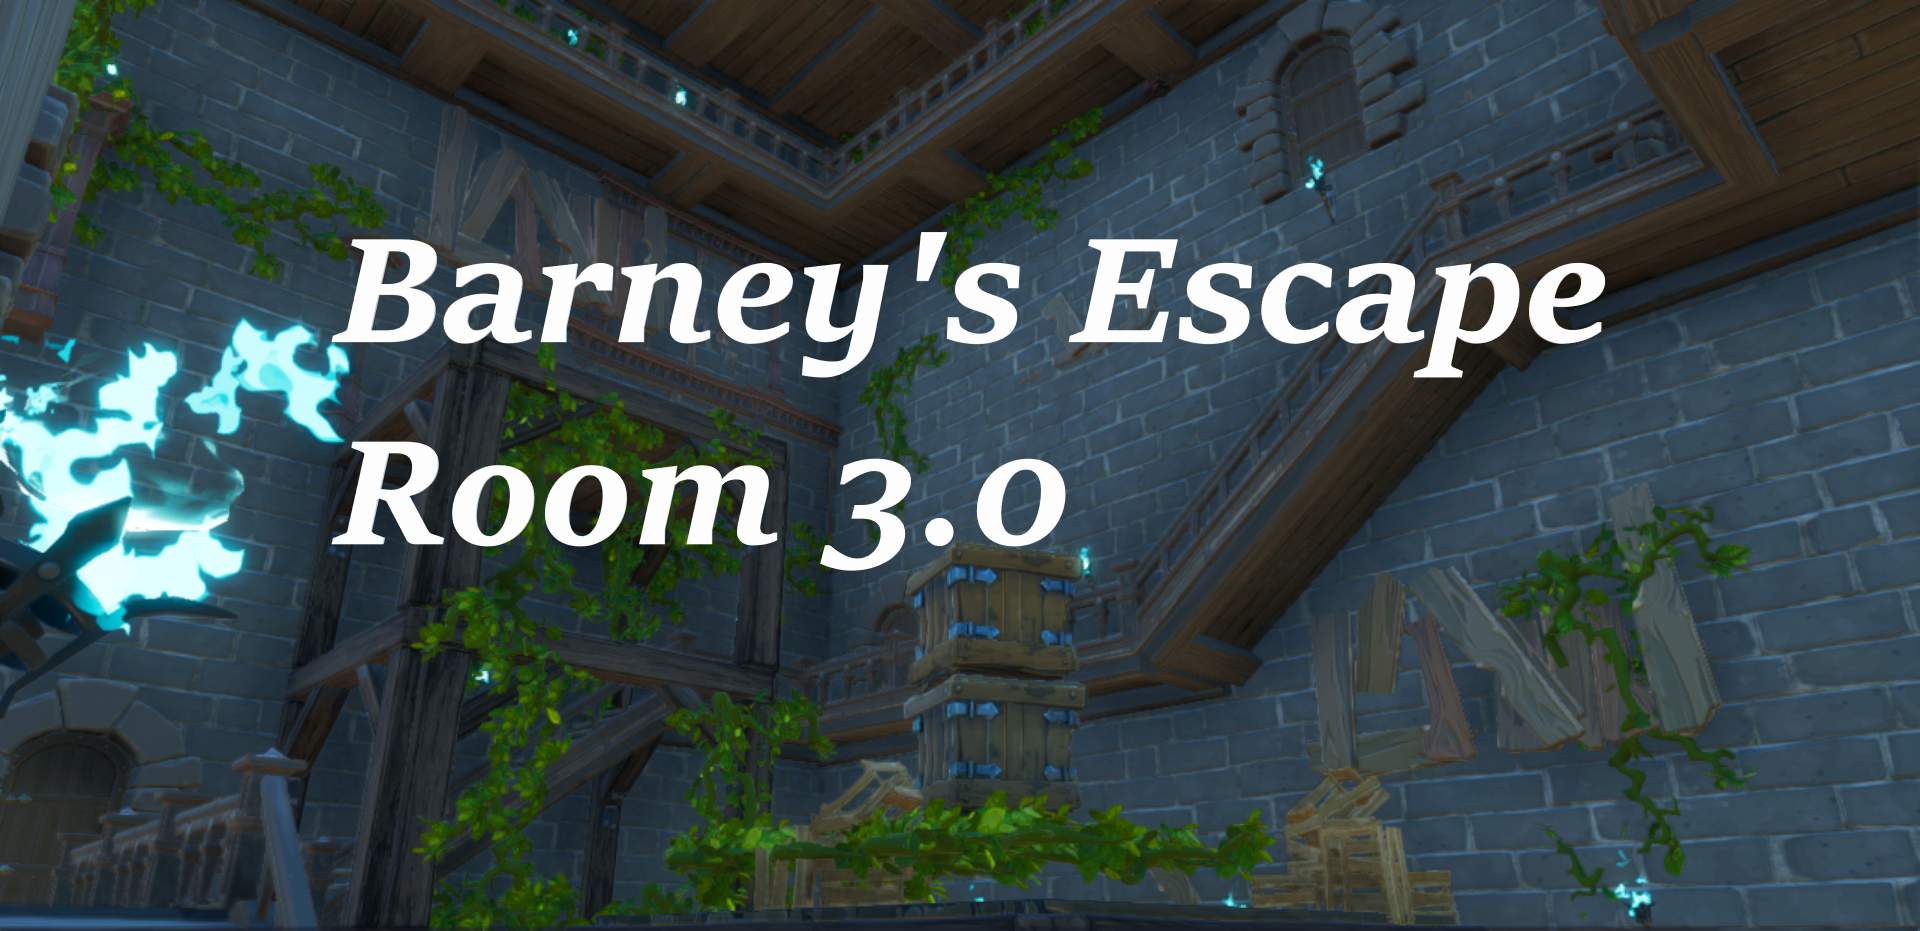 barney-s-escape-room-3-0-fortnite-creative-map-code-dropnite